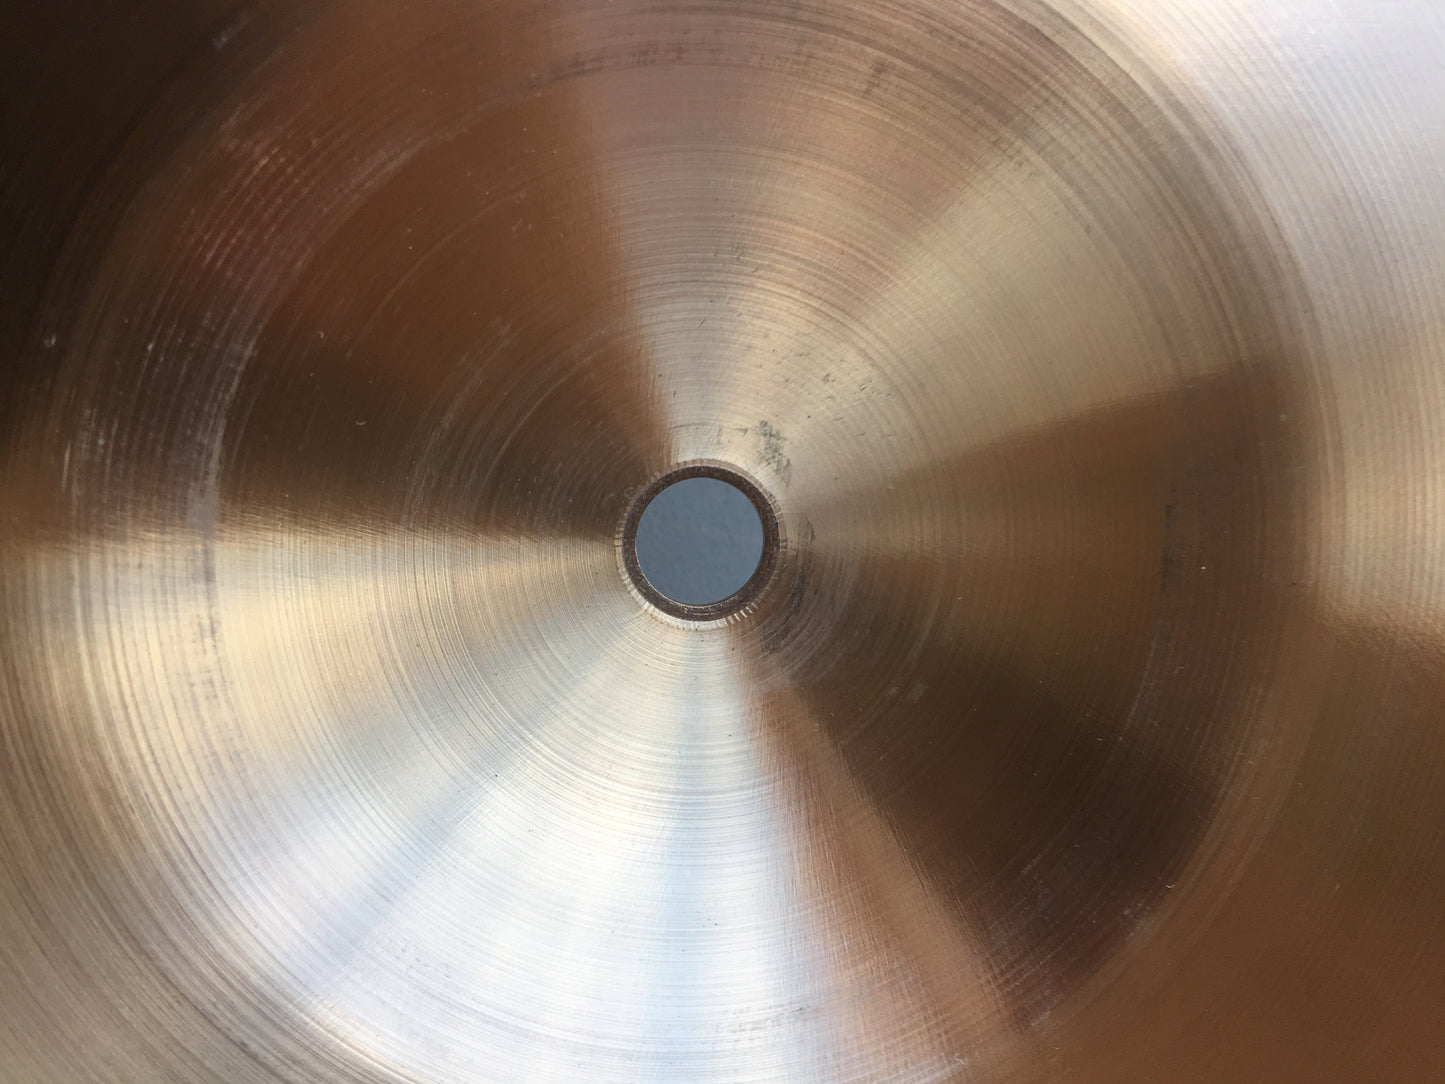 14" Paiste Formula 602 Blue Label Sound Edge Hi-Hat Cymbals #481